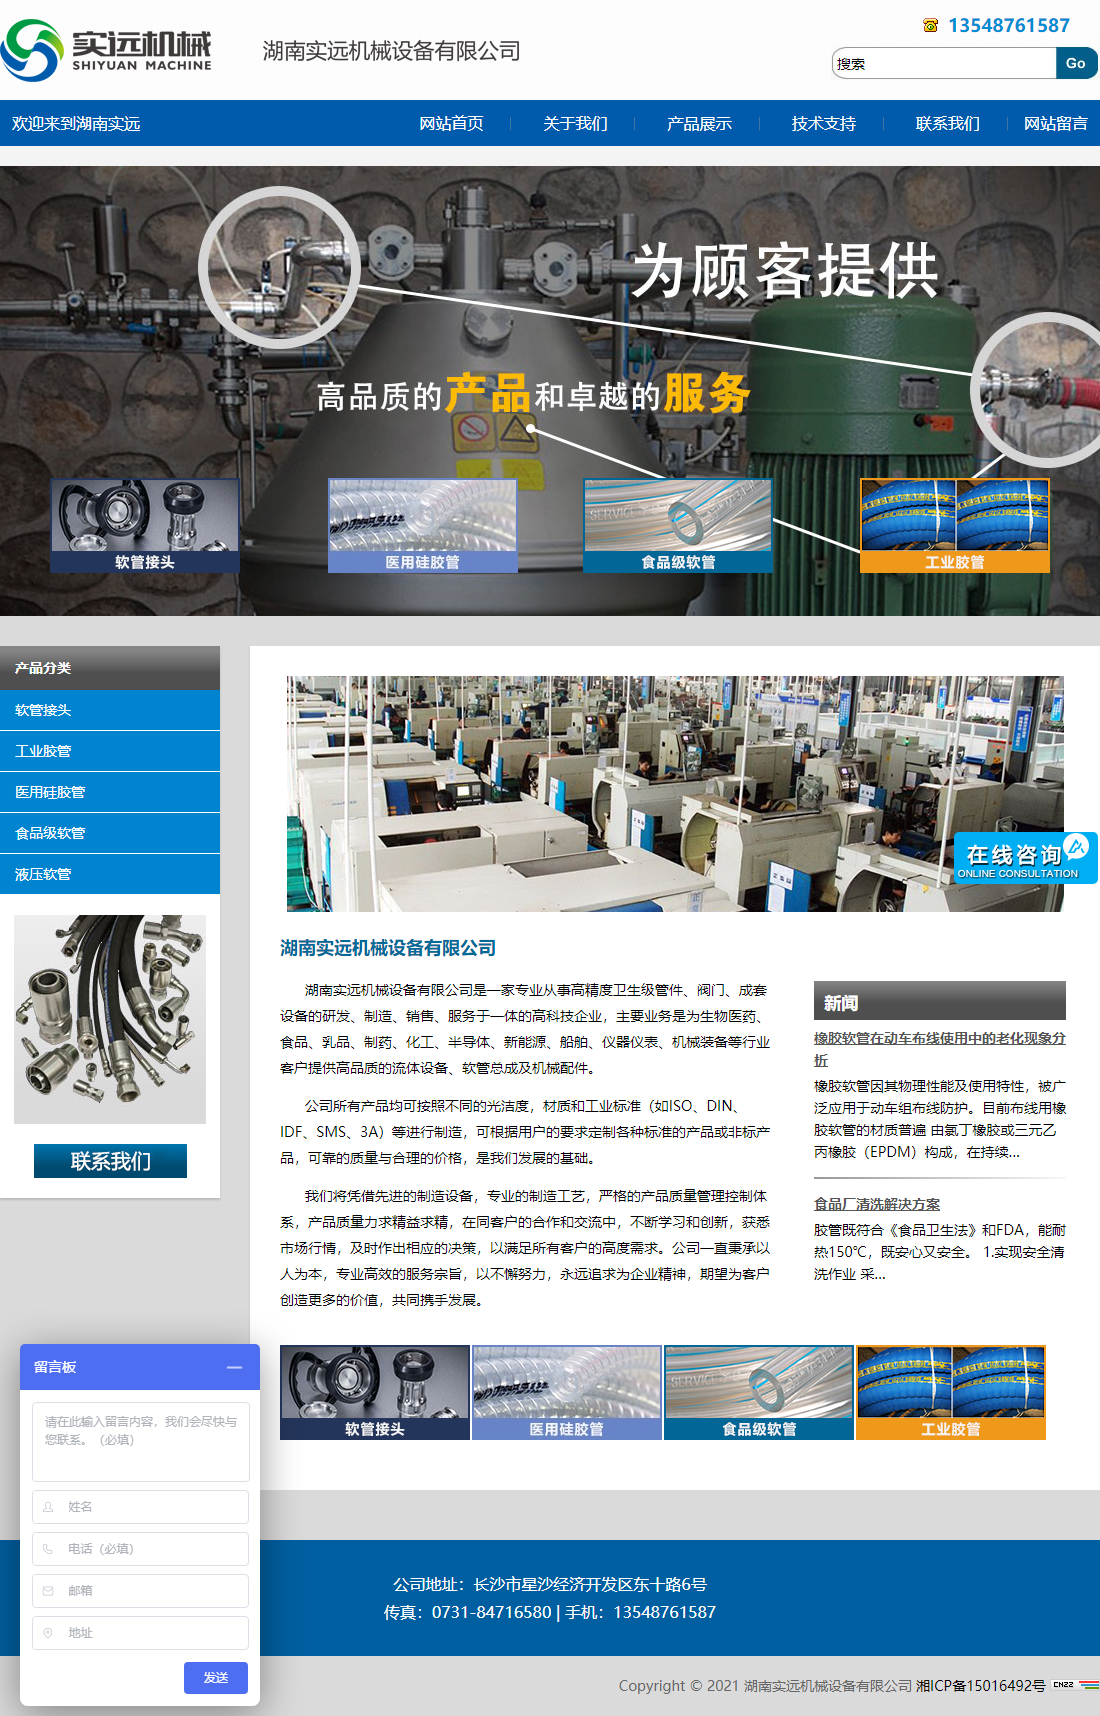 湖南实远机械设备有限公司网站案例